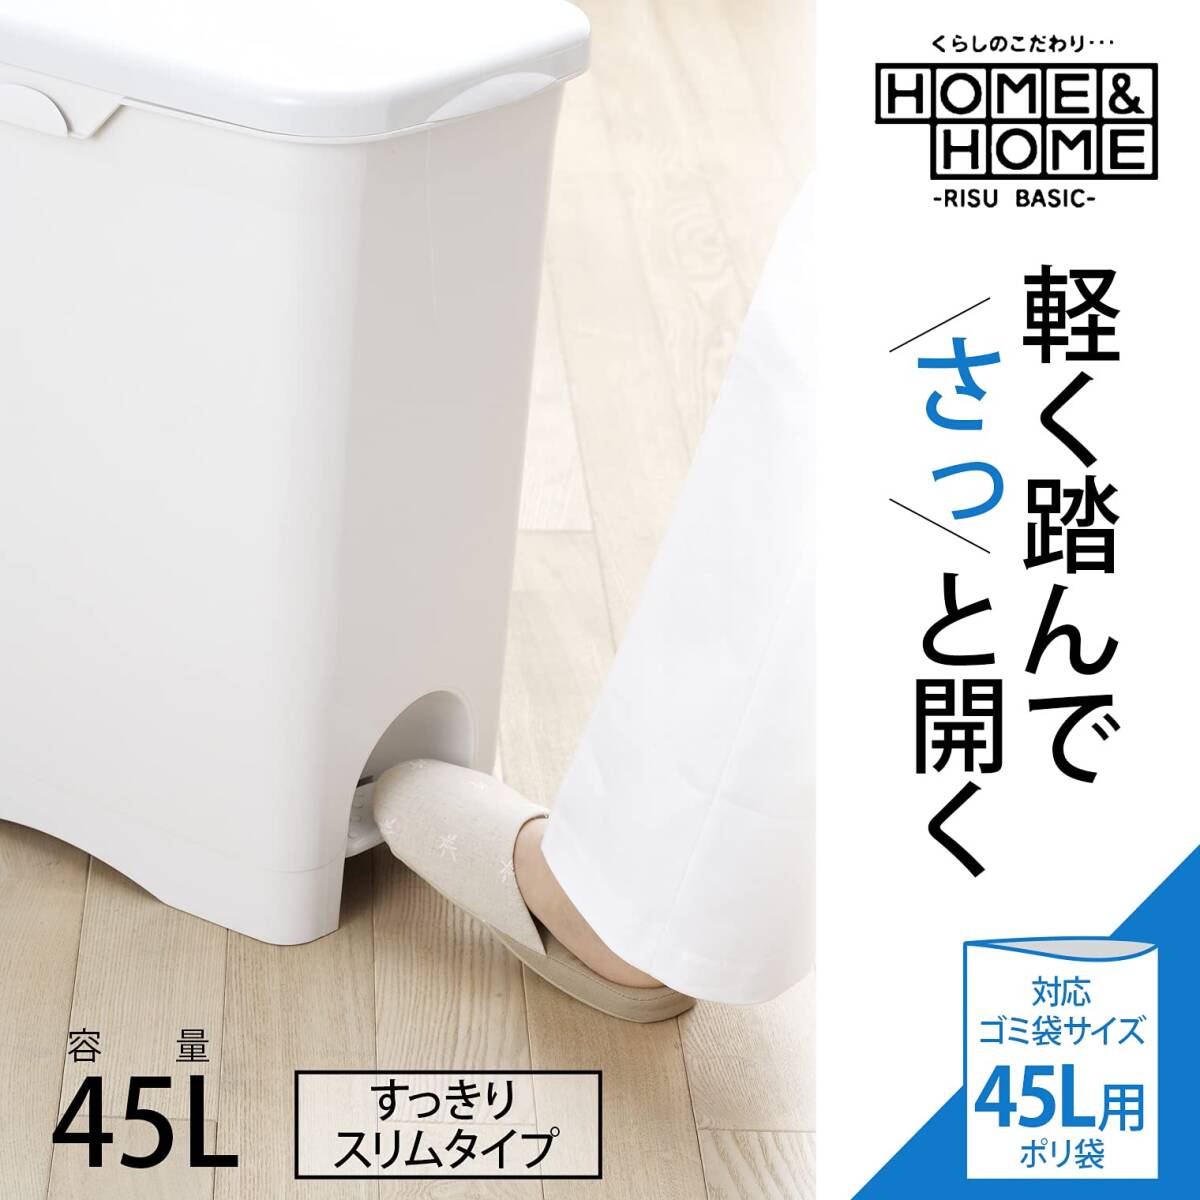 リス ゴミ箱 H&H 45PS ペダルペール ポリ袋フック付 グレー 45L 日本製_画像2